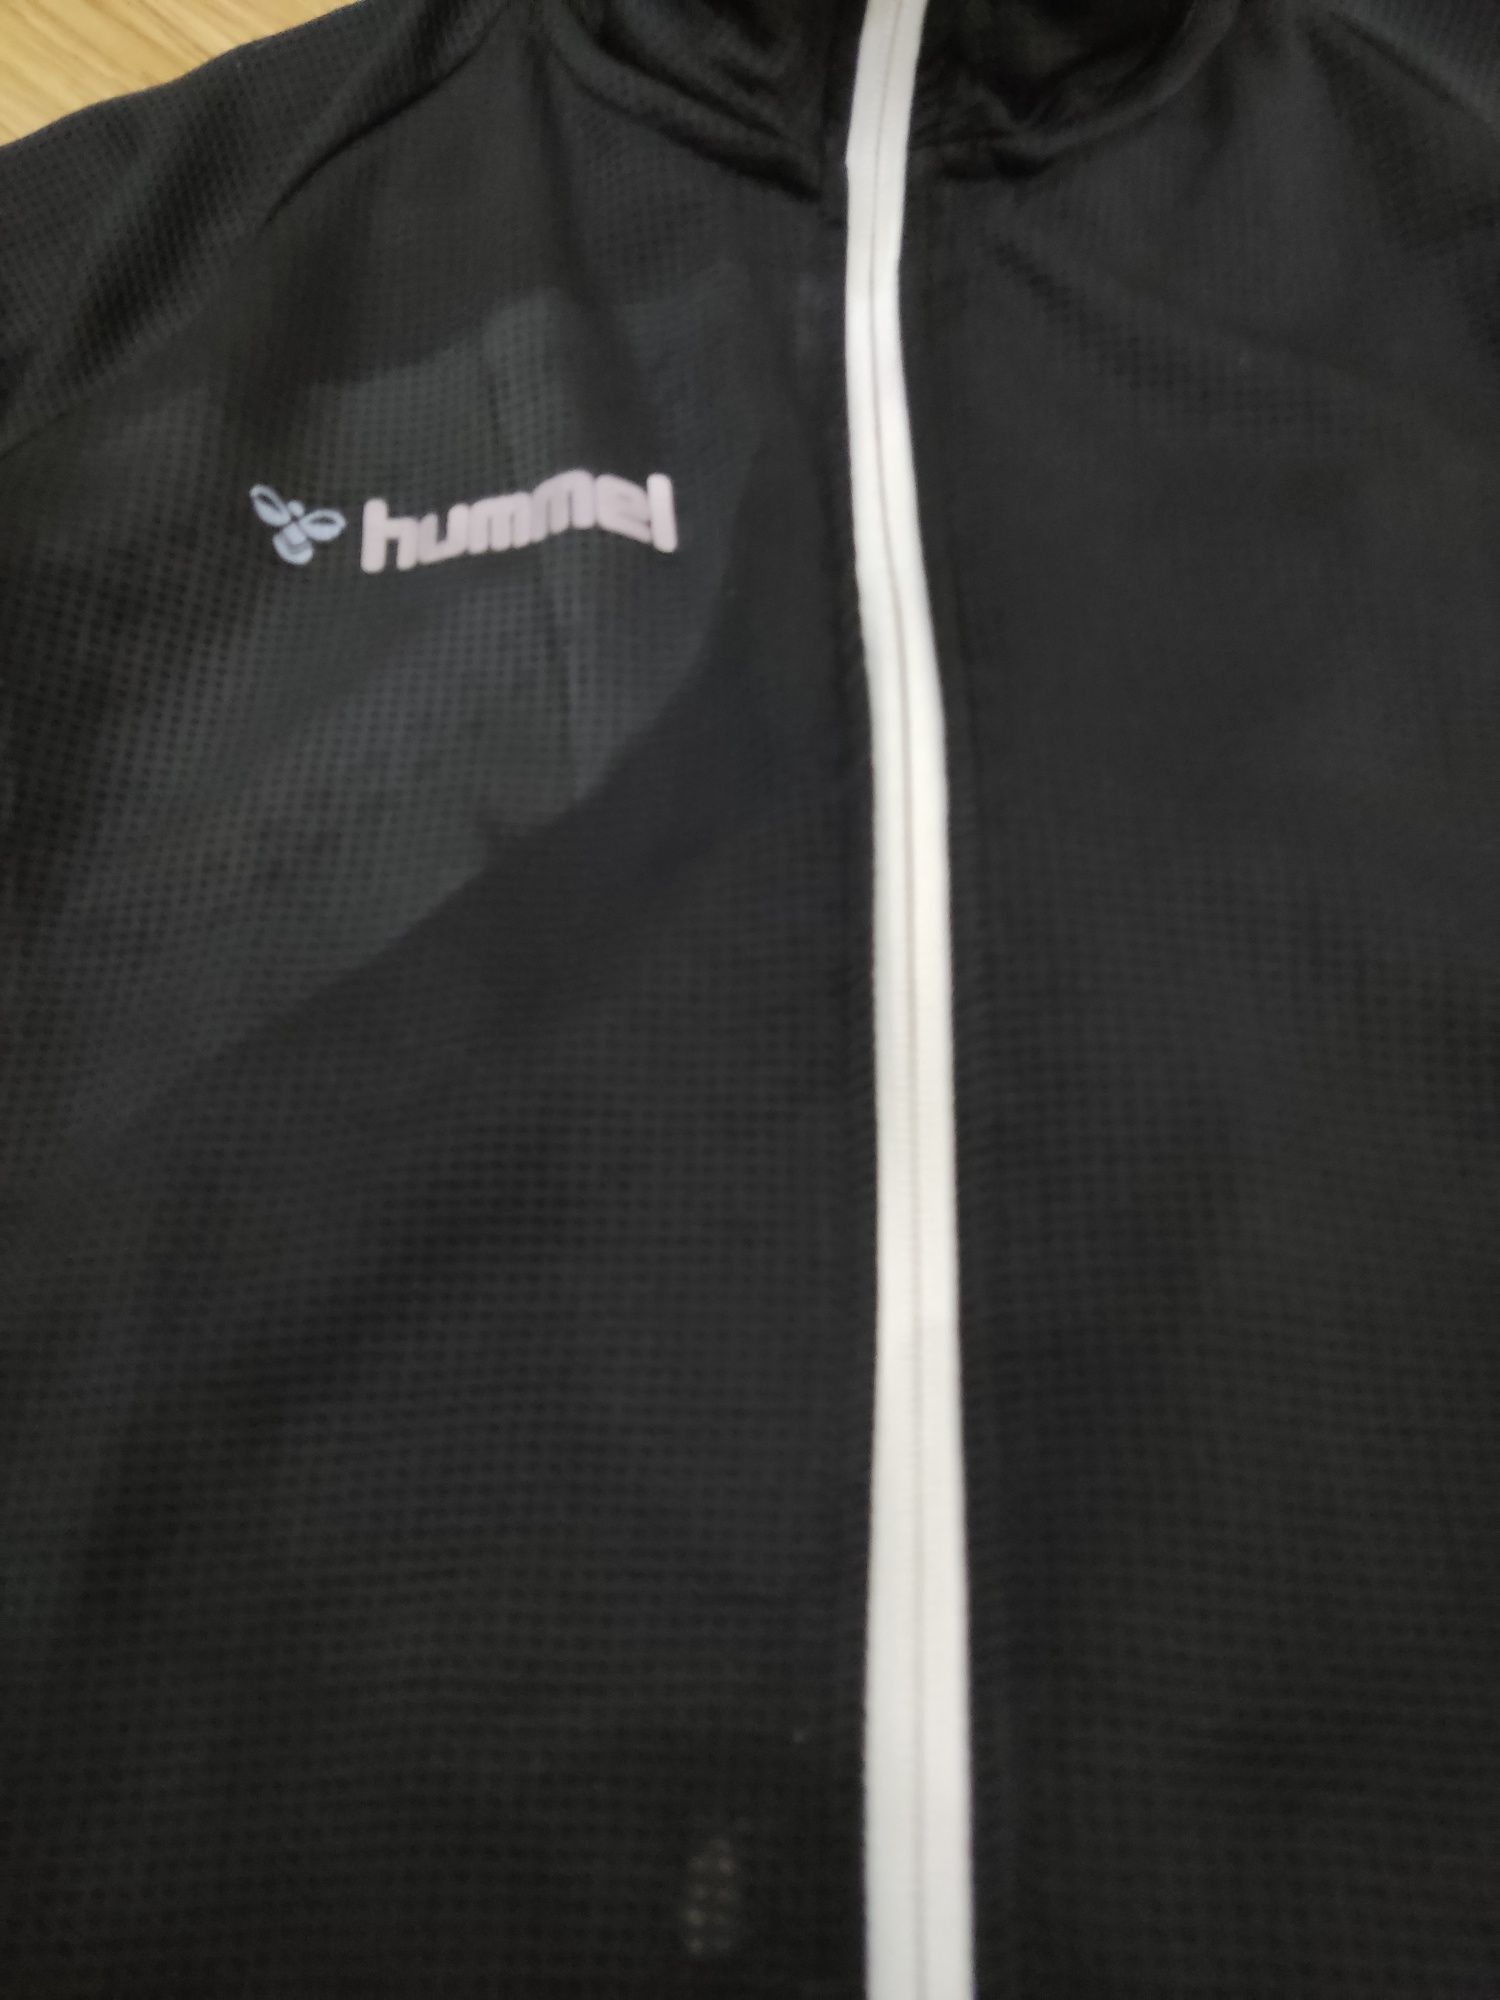 Bluza czarna sportowa Hummel S M chłopięca